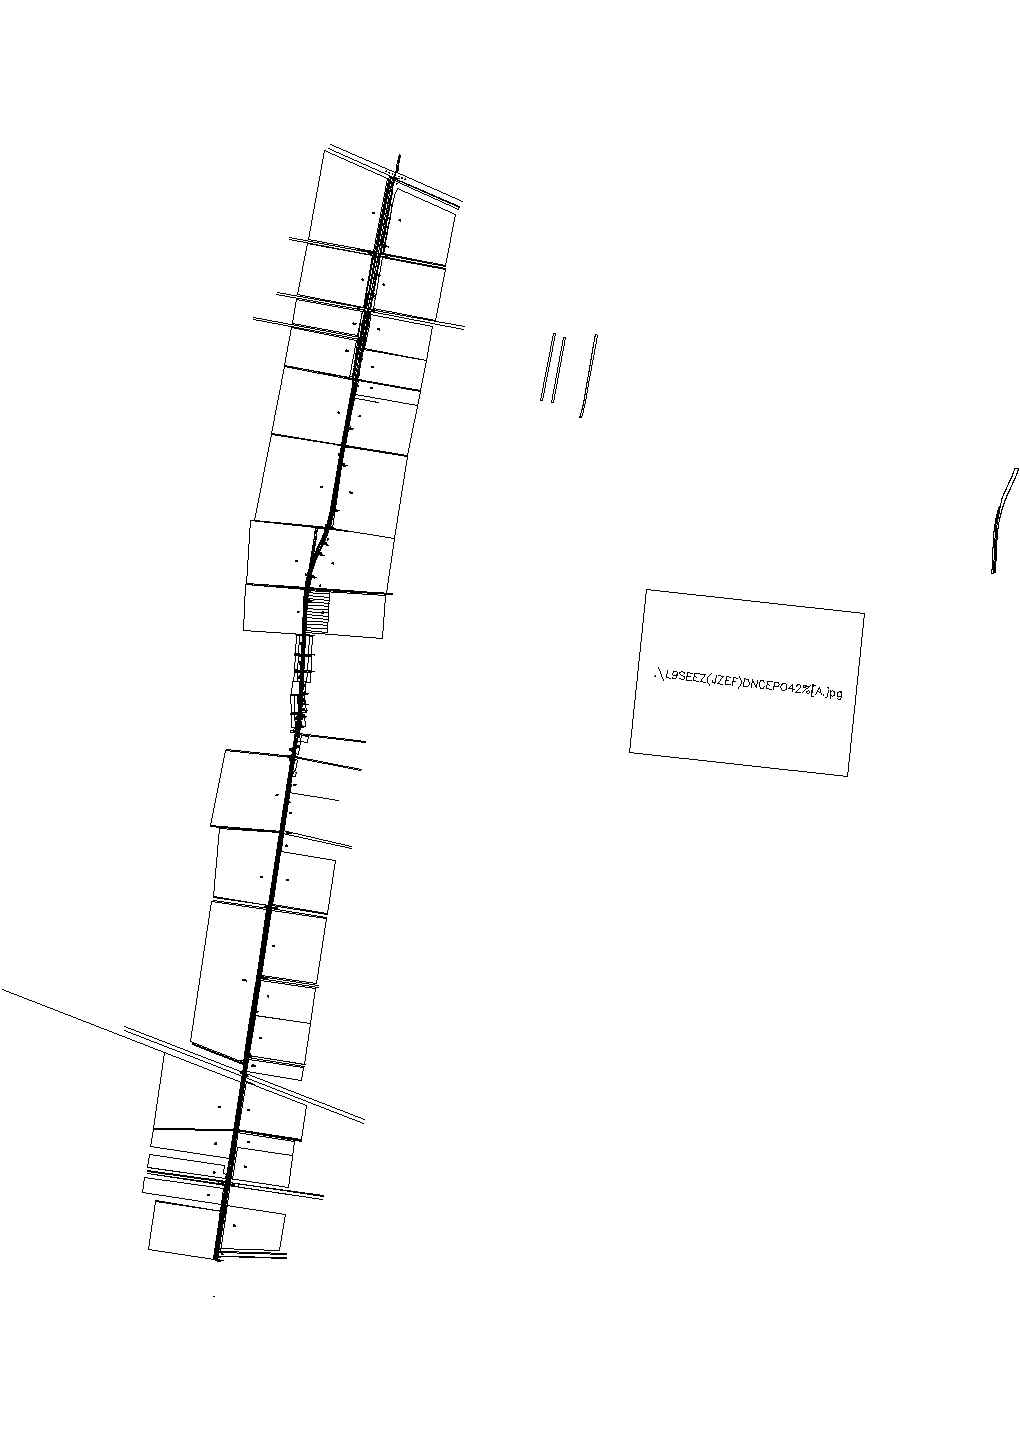 2014年三级公路工程设计方案（附CAD图）